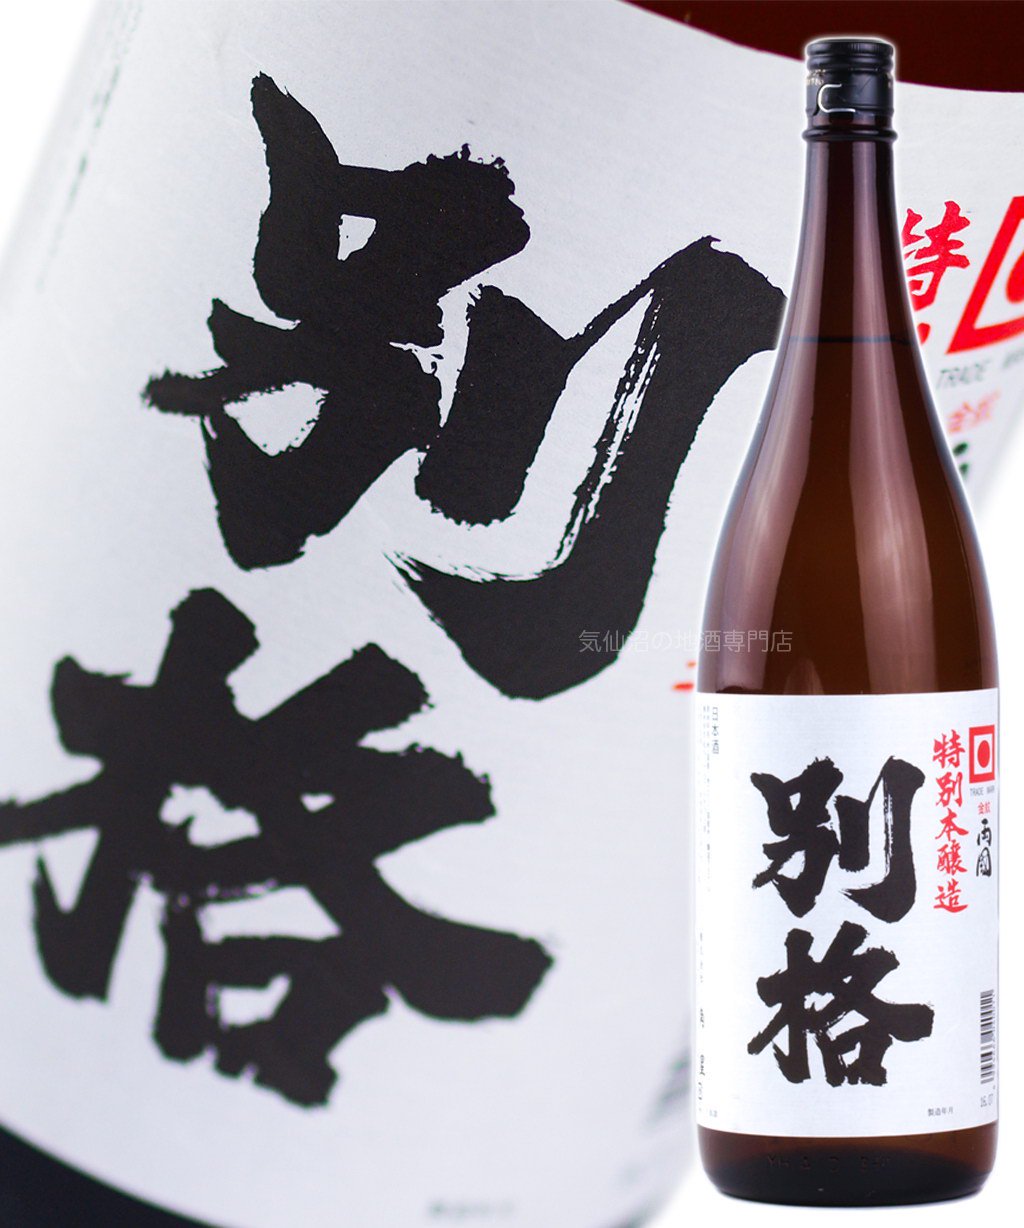 角星 別格 特別本醸造酒 端麗辛口 1.8L 